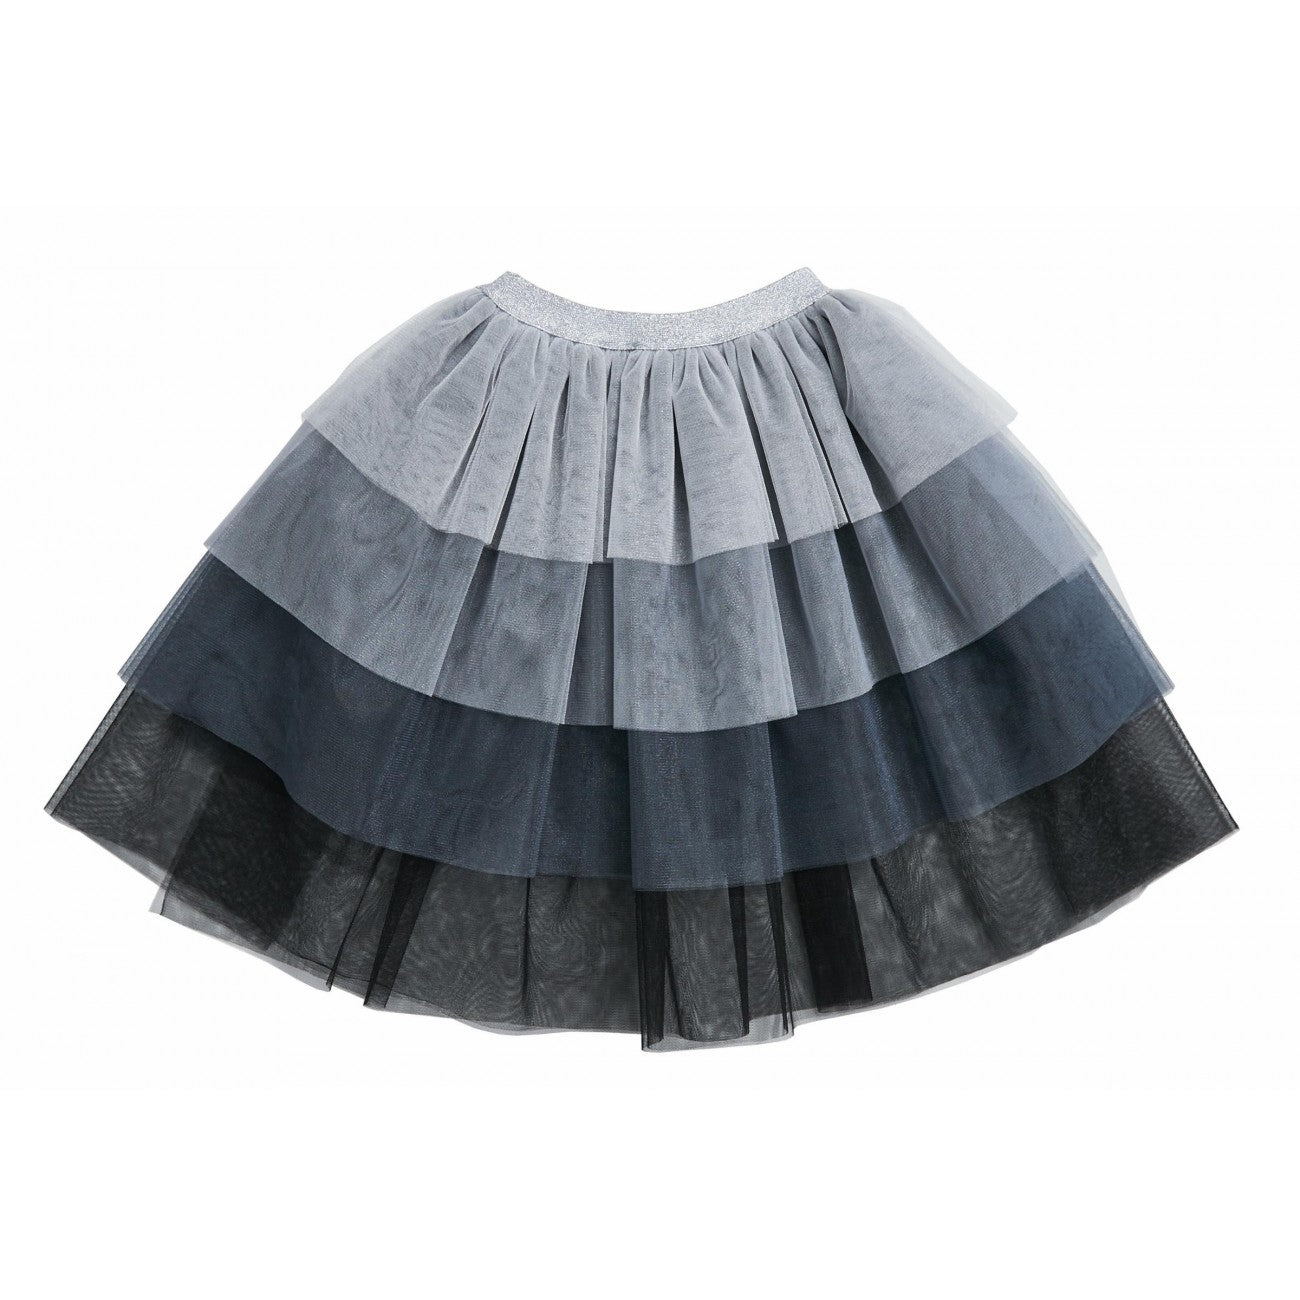 Chloe Layered Skirt